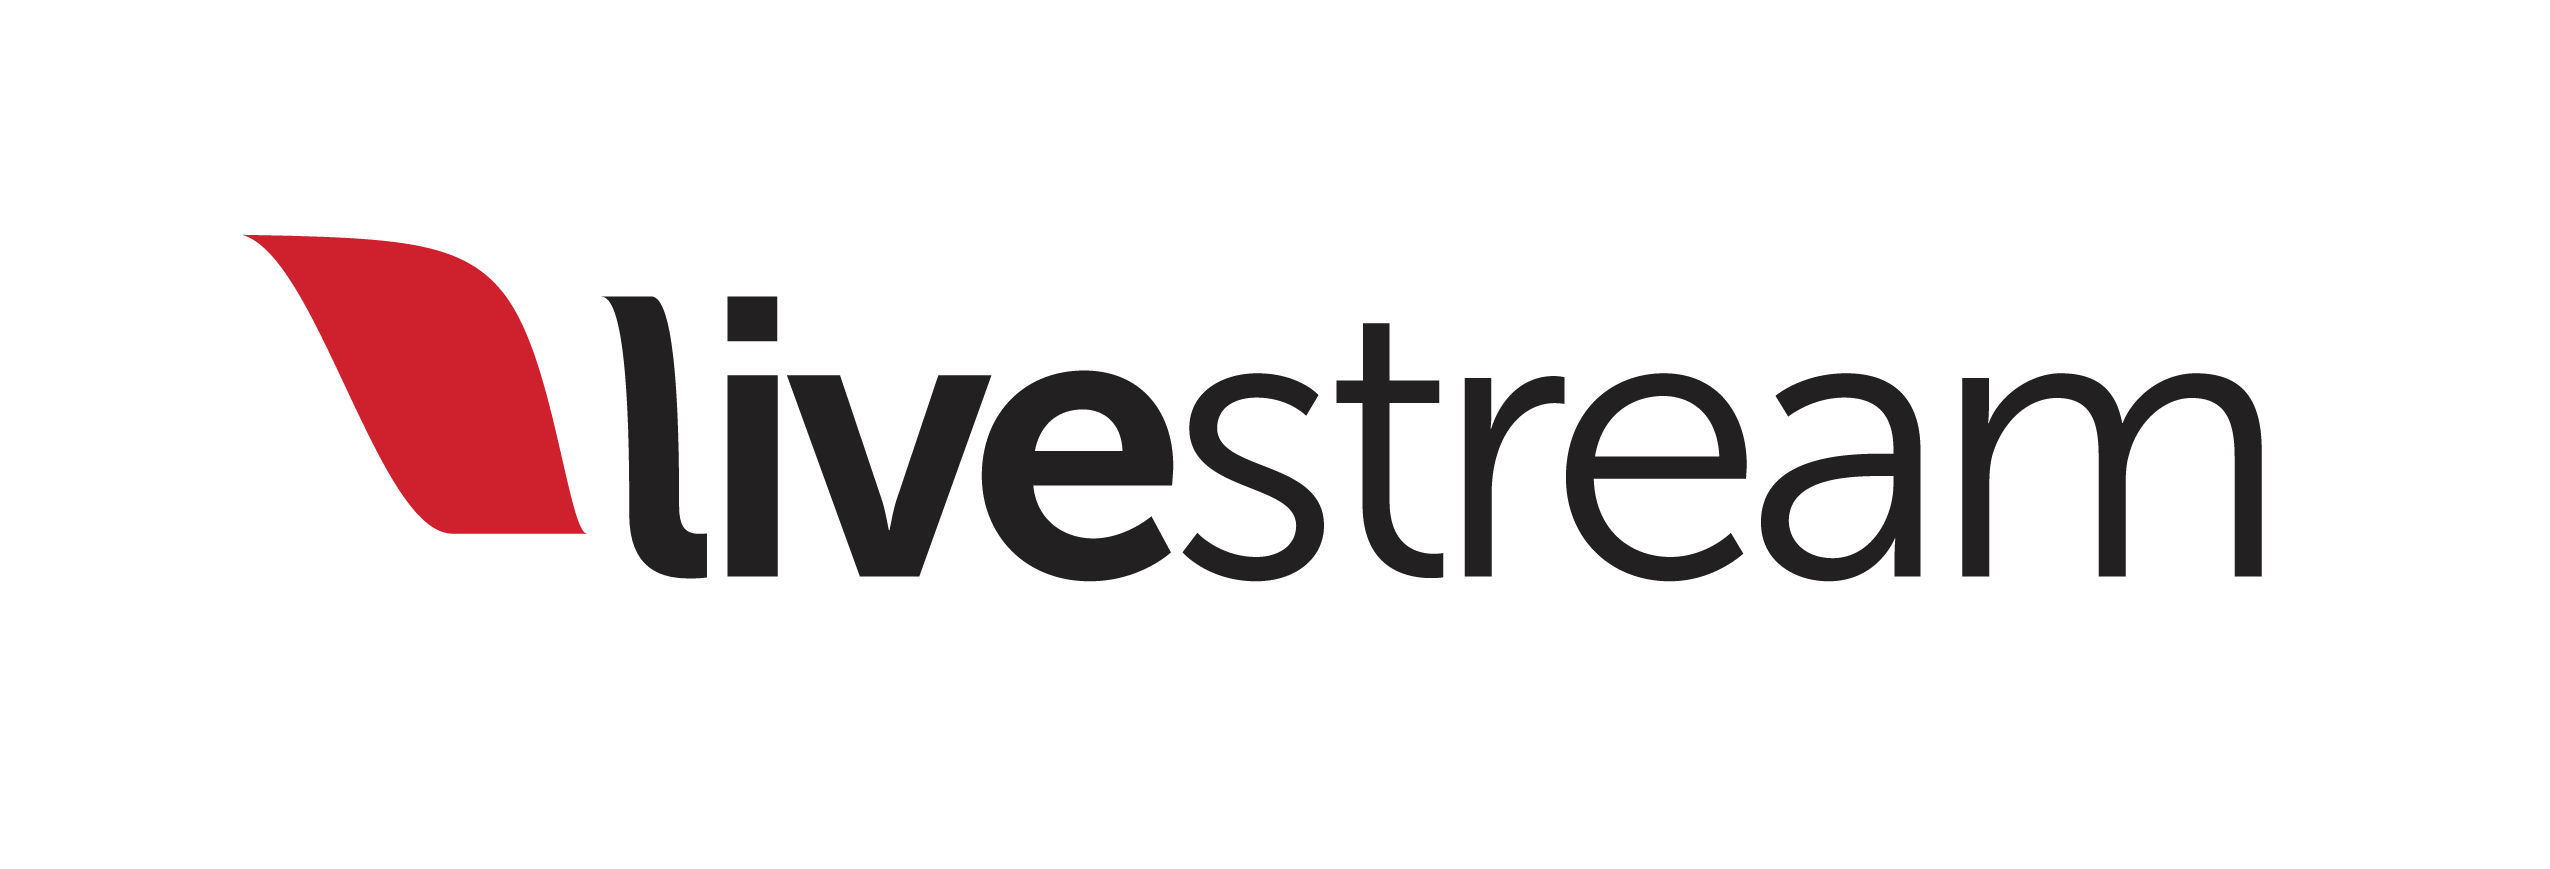 Google Stream Logo - Livestream Logo transparent PNG - StickPNG